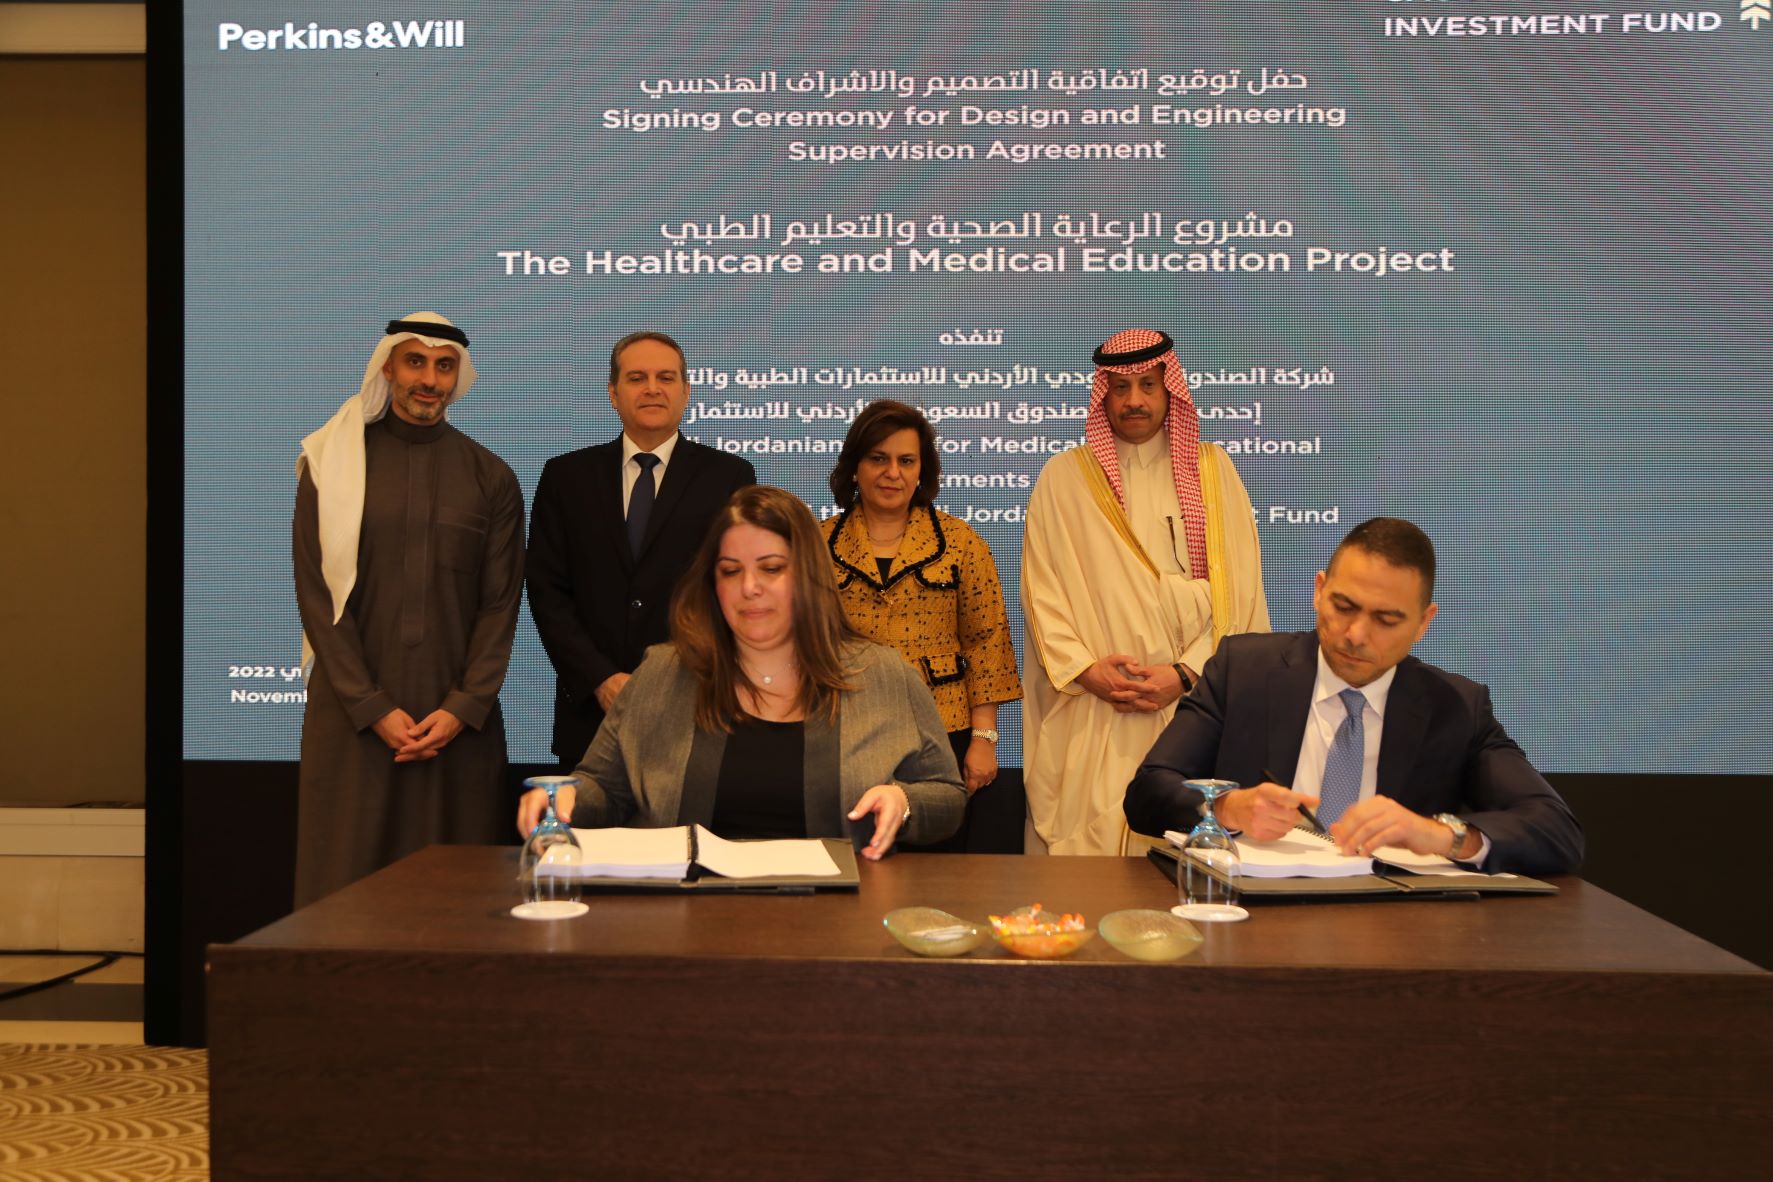 مندوبة عن رئيس الوزراء، وزيرة الاستثمار ترعى توقيع اتفاقية بين الصندوق السعودي الأردني للاستثمار و شركة دار الهندسة  للتصميم والإشراف الهندسي  لمشروع الرعاية الصحية